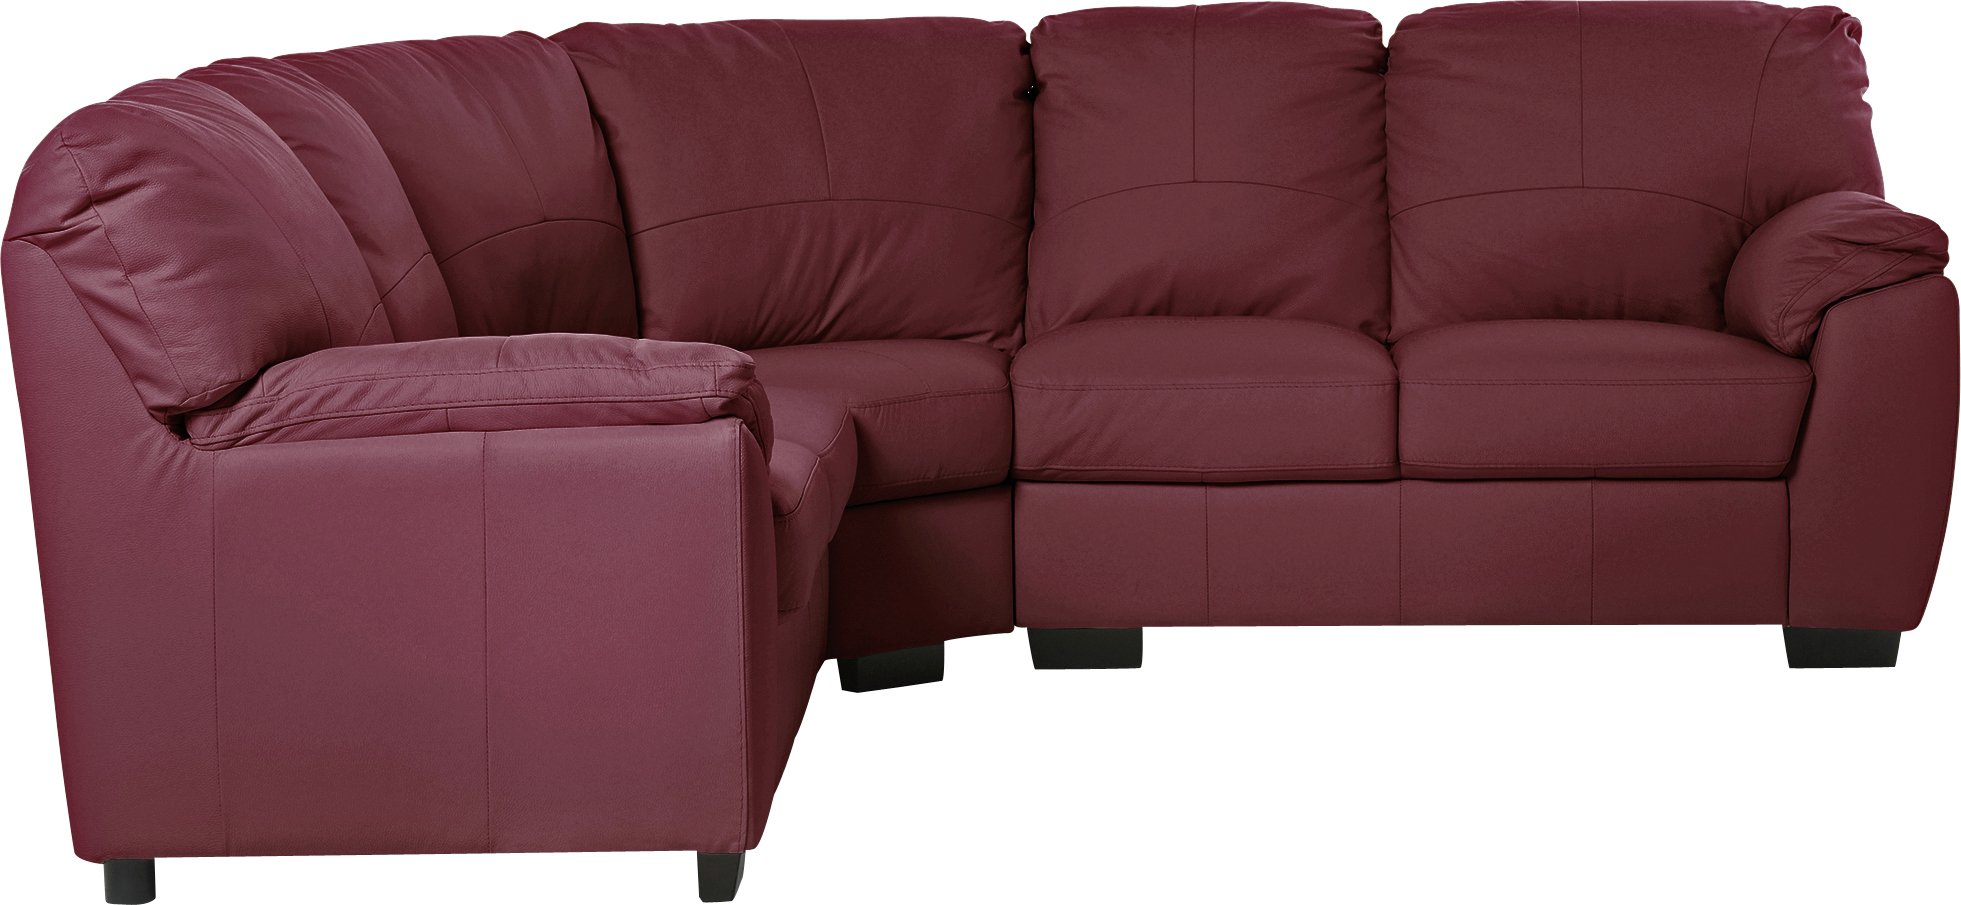 argos corner sofa bed sale